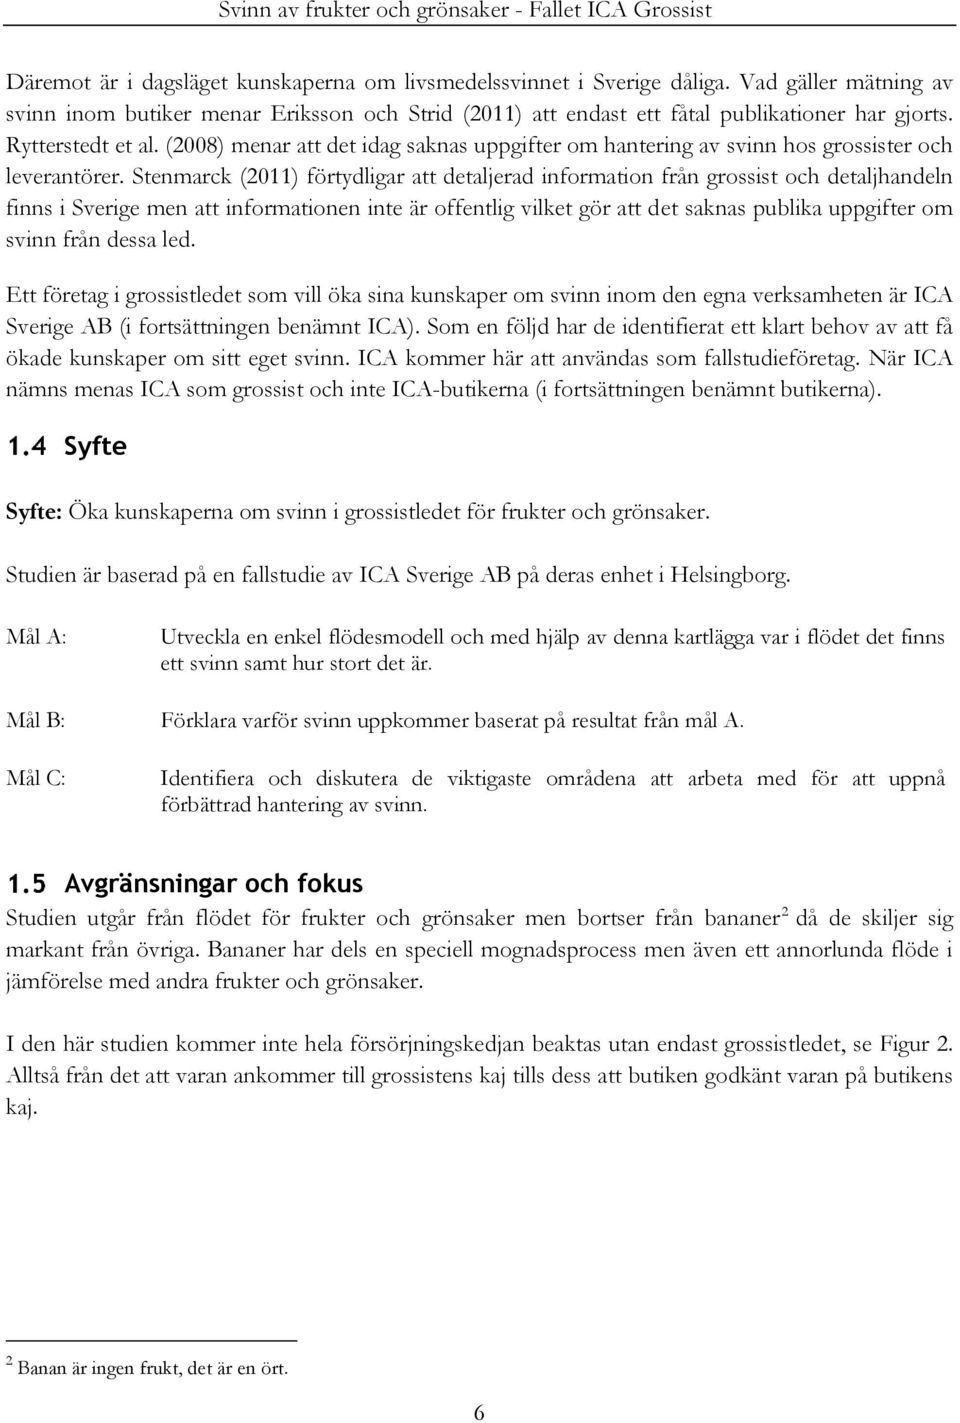 Stenmarck (2011) förtydligar att detaljerad information från grossist och detaljhandeln finns i Sverige men att informationen inte är offentlig vilket gör att det saknas publika uppgifter om svinn